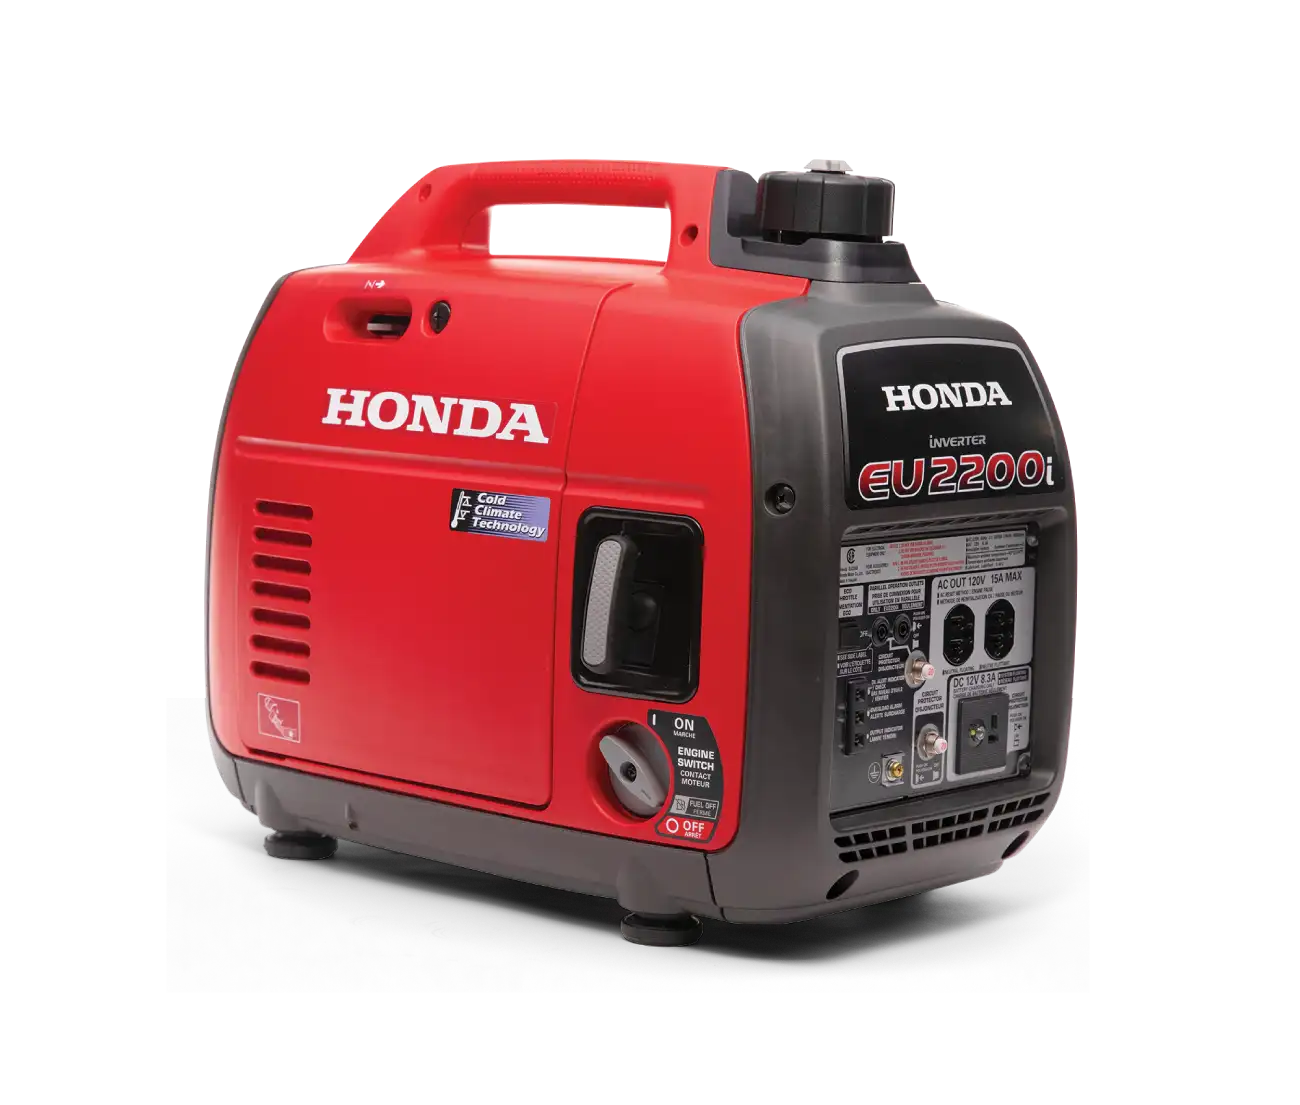 Honda power generator EU2200i